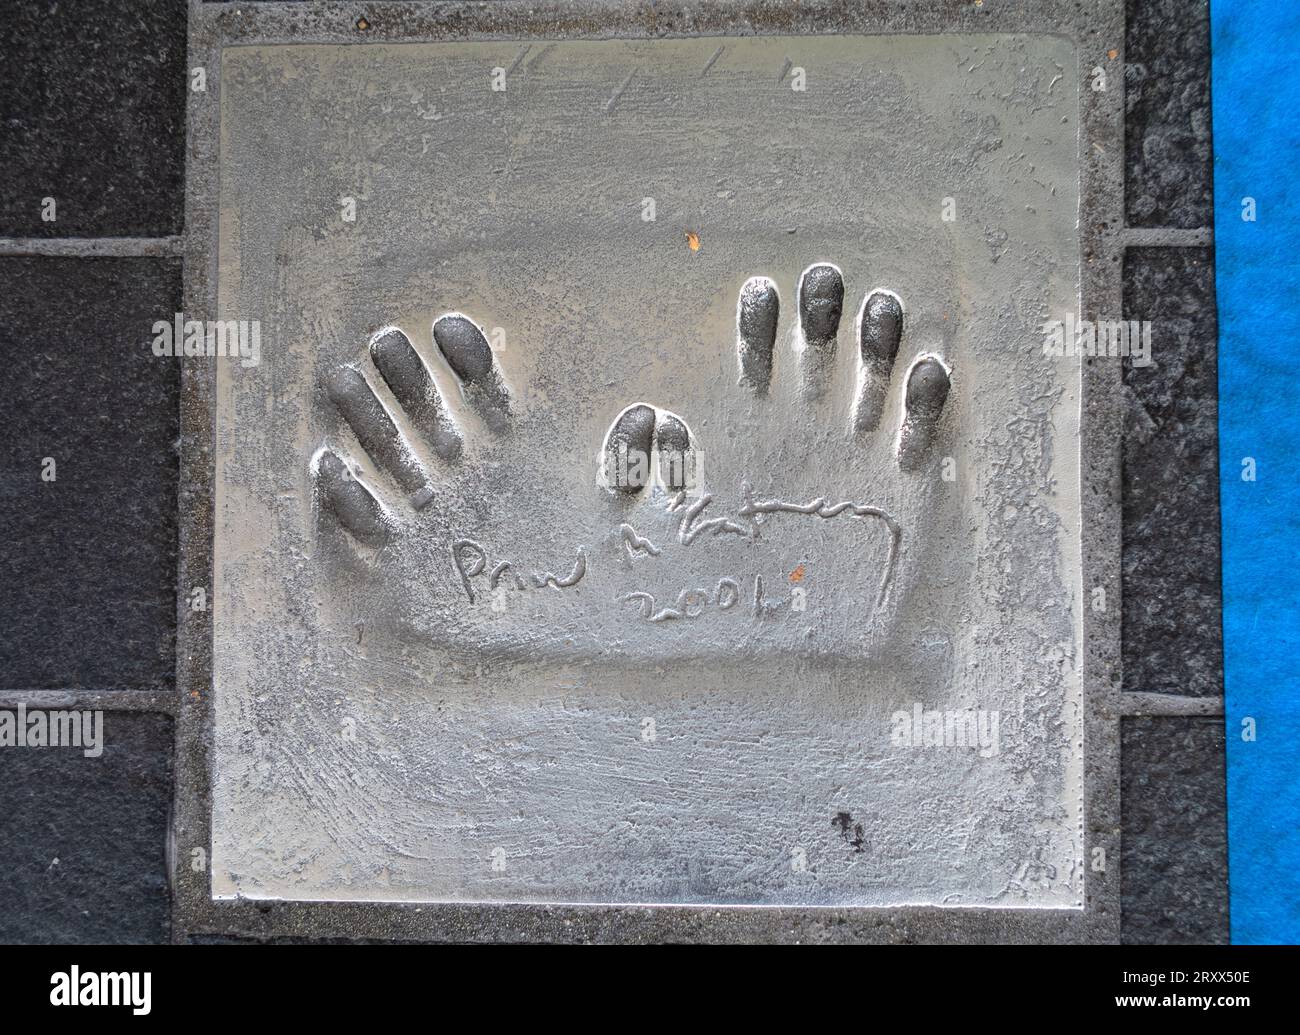 L'empreinte de main du célèbre chanteur, compositeur, musicien et compositeur anglais Paul McCartney se trouve sur le trottoir de l'allée des étoiles (Avenue of t Banque D'Images